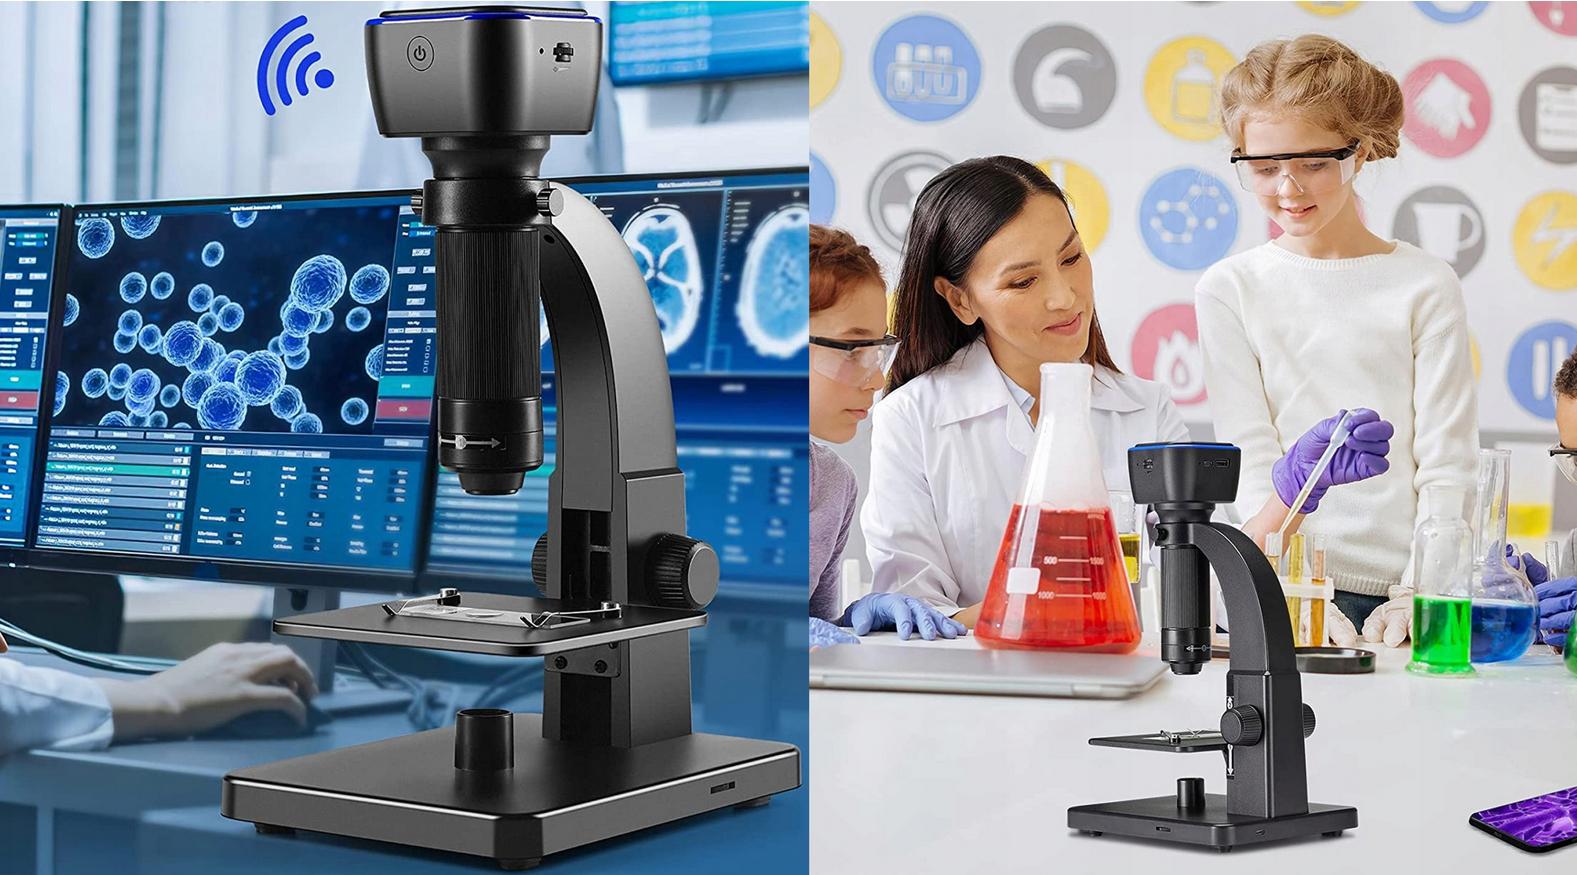 INSKAM 315W - wybierz nowoczesny mikroskop z opcją robienia zdjęć i dziecinnie prostą obsługą!